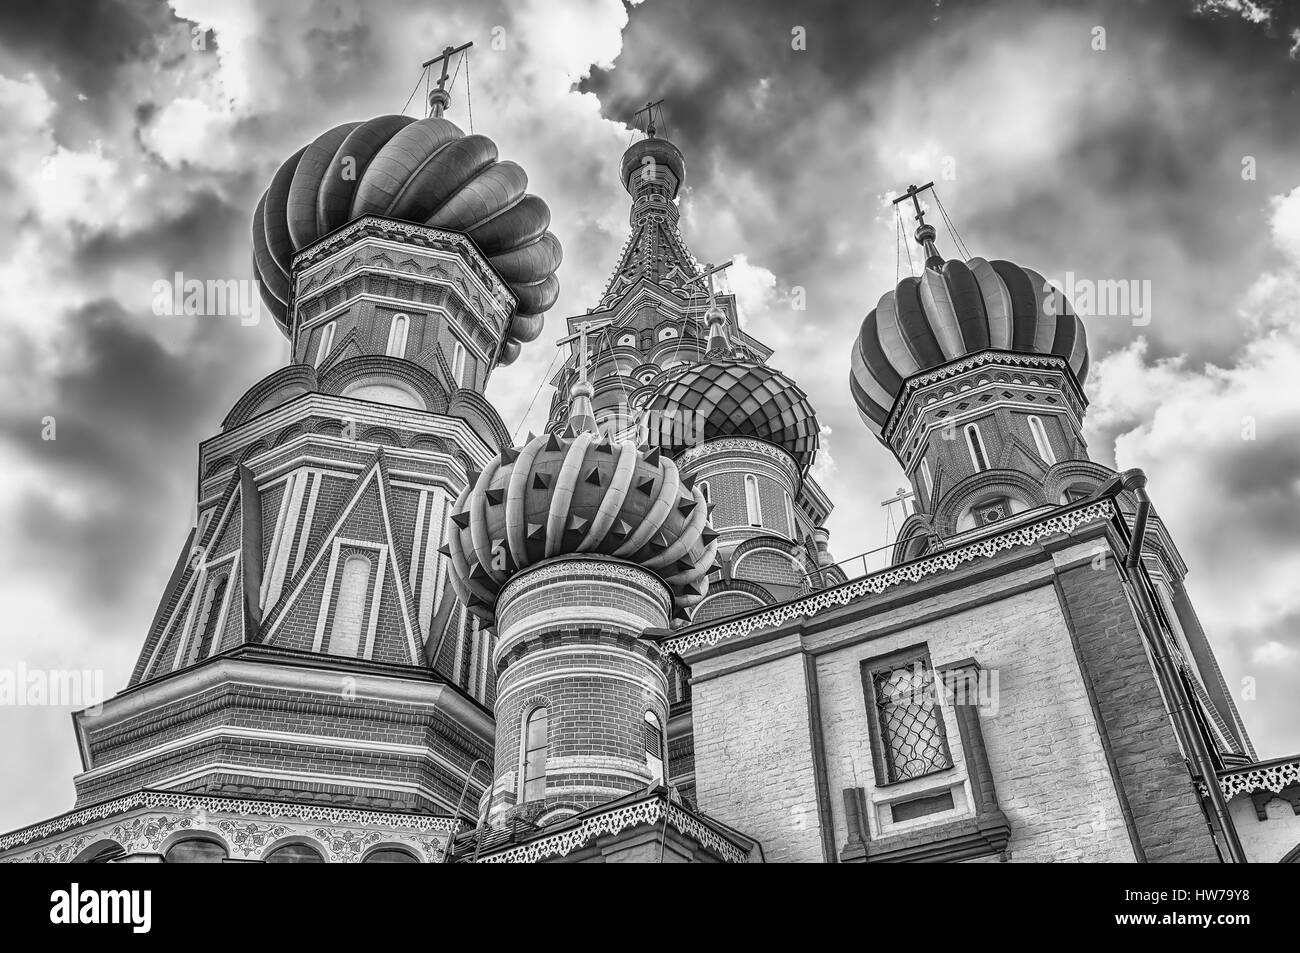 La magnifique cathédrale orthodoxe Saint Basile, établissement emblématique sur la Place Rouge à Moscou, Russie Banque D'Images